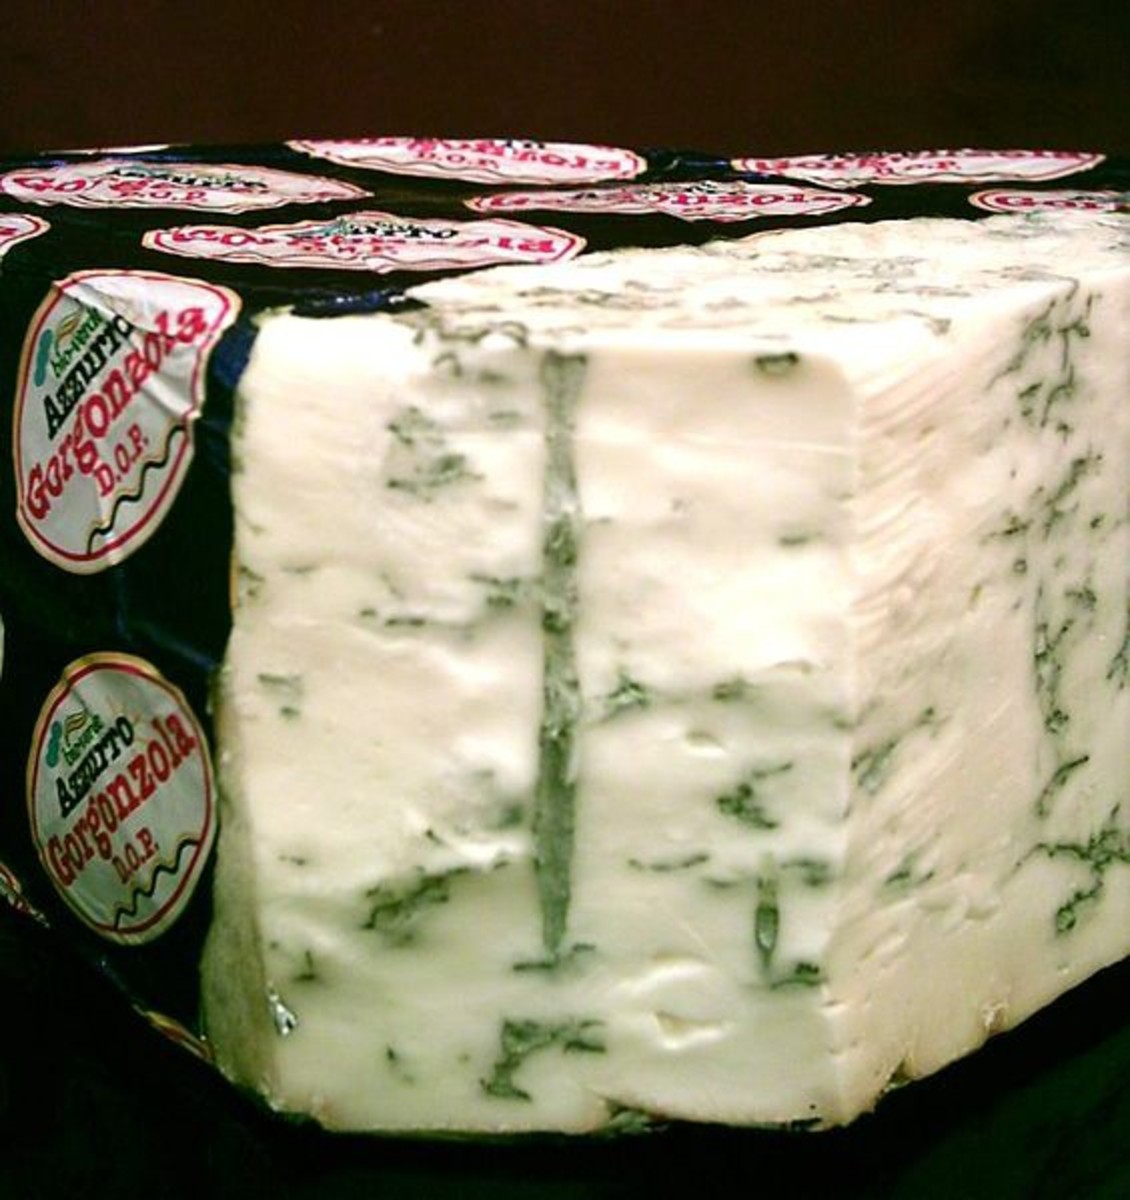 Italian Gorgonzola cheese